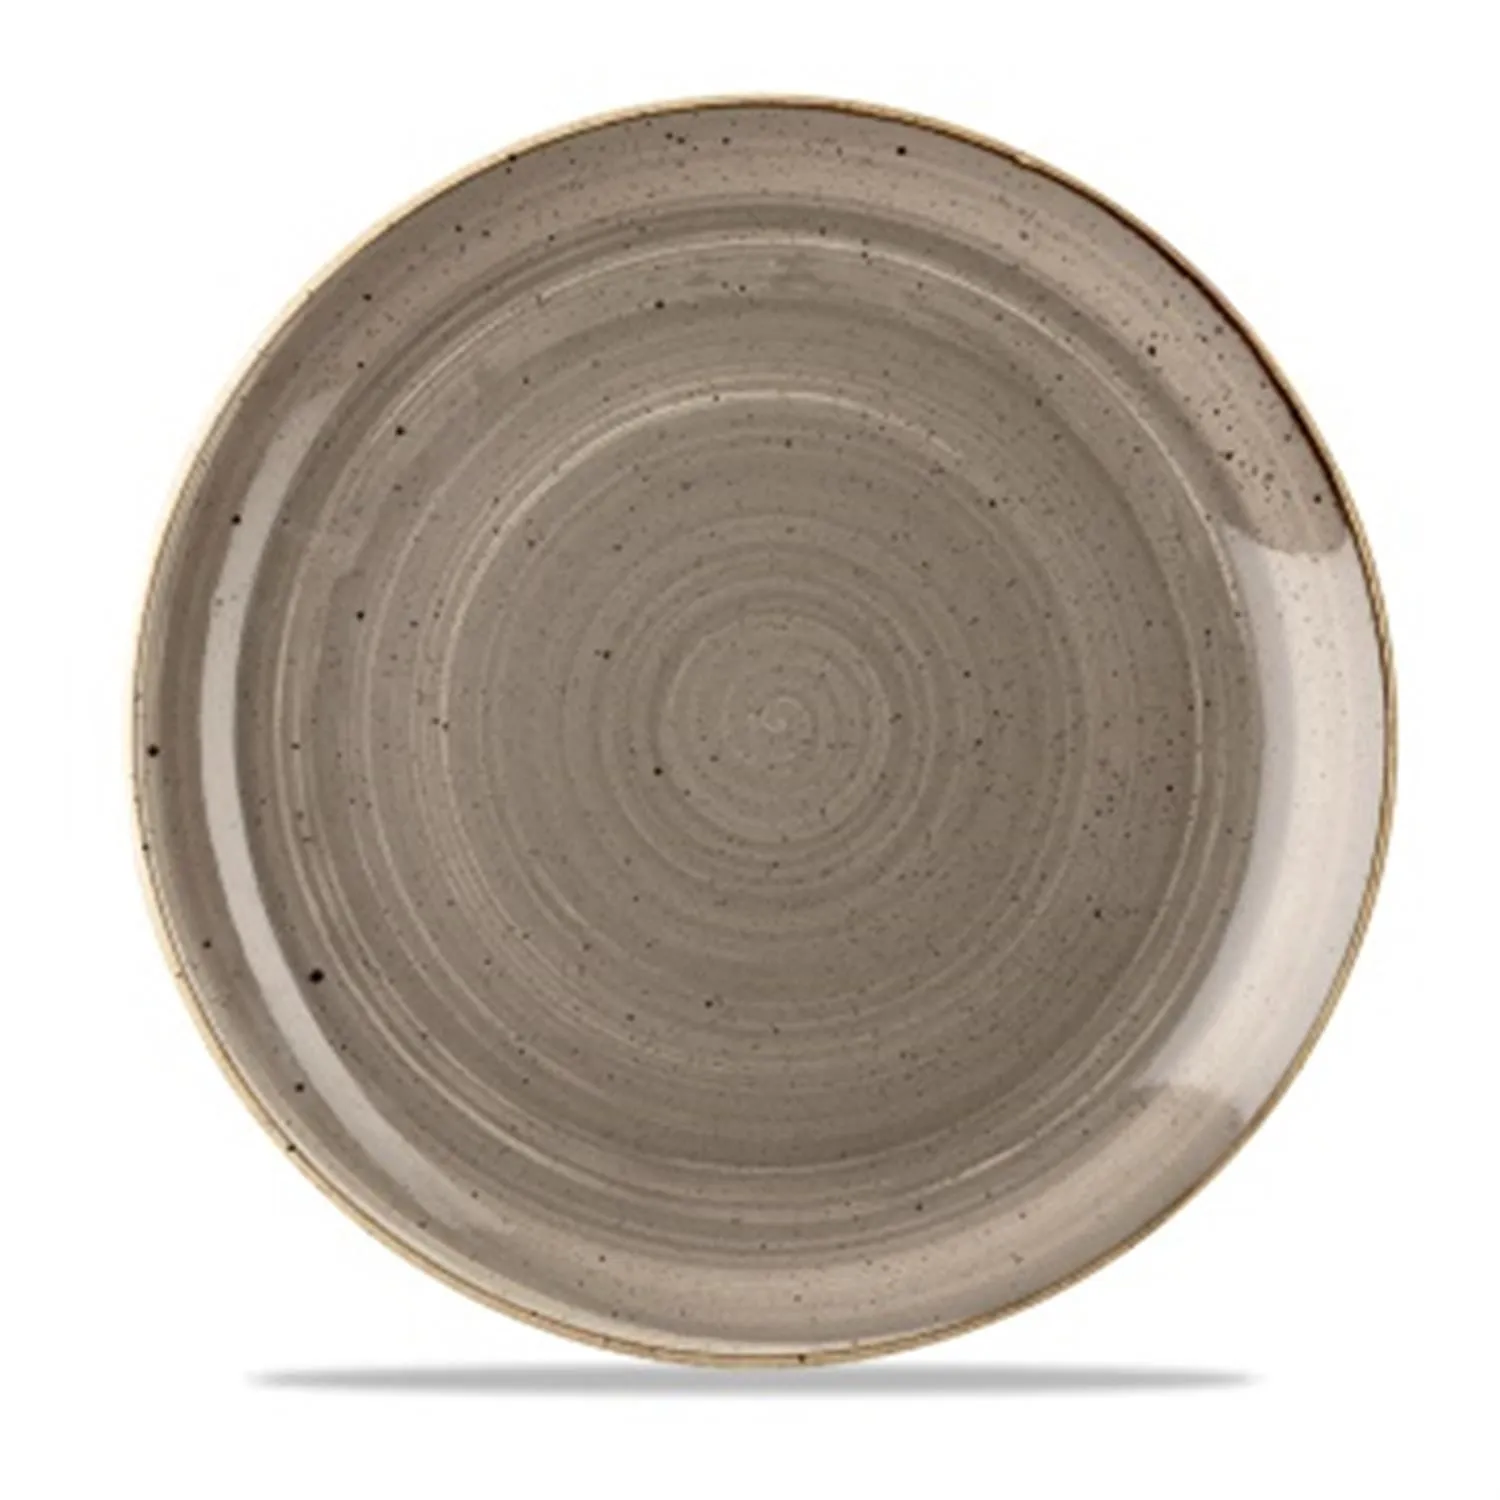 Piatto piano in porcellana grigio stone, diam. 17cm, 6 pezzi